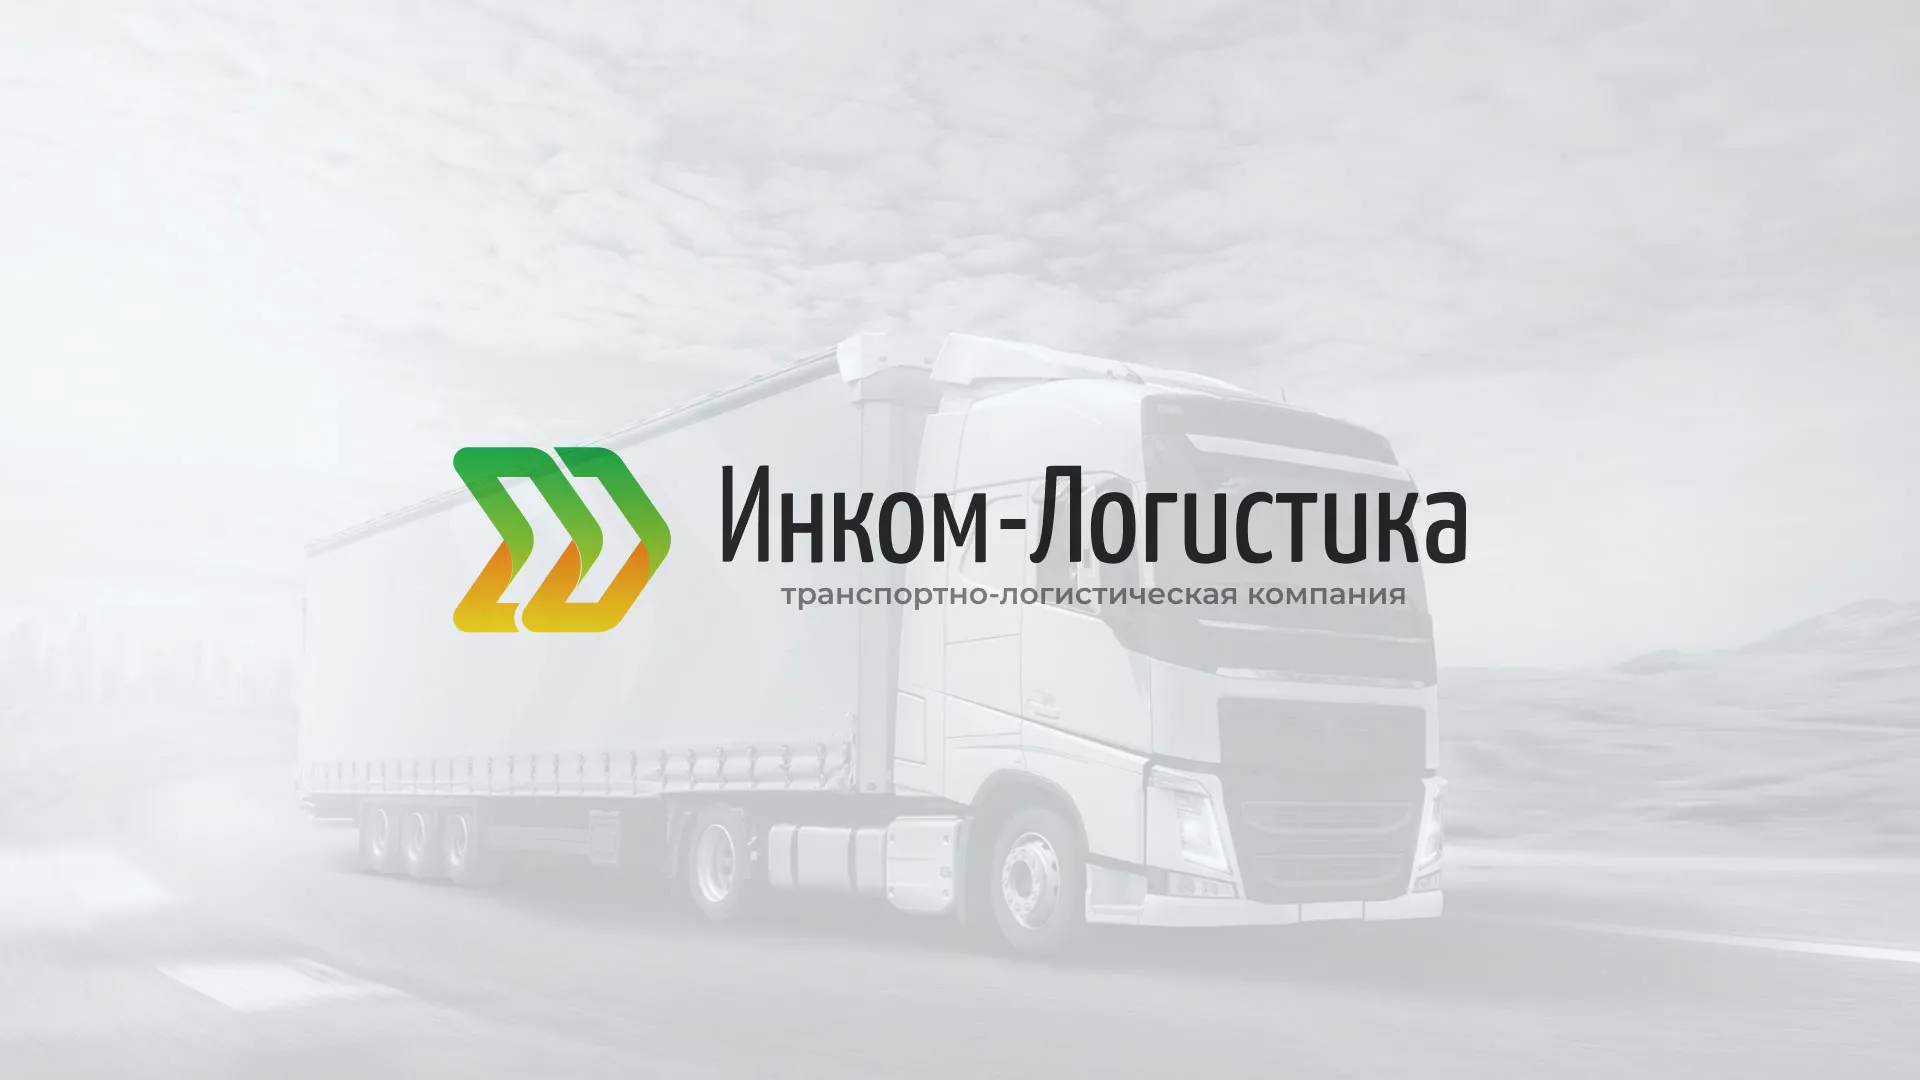 Разработка логотипа и сайта компании «Инком-Логистика» в Владимире